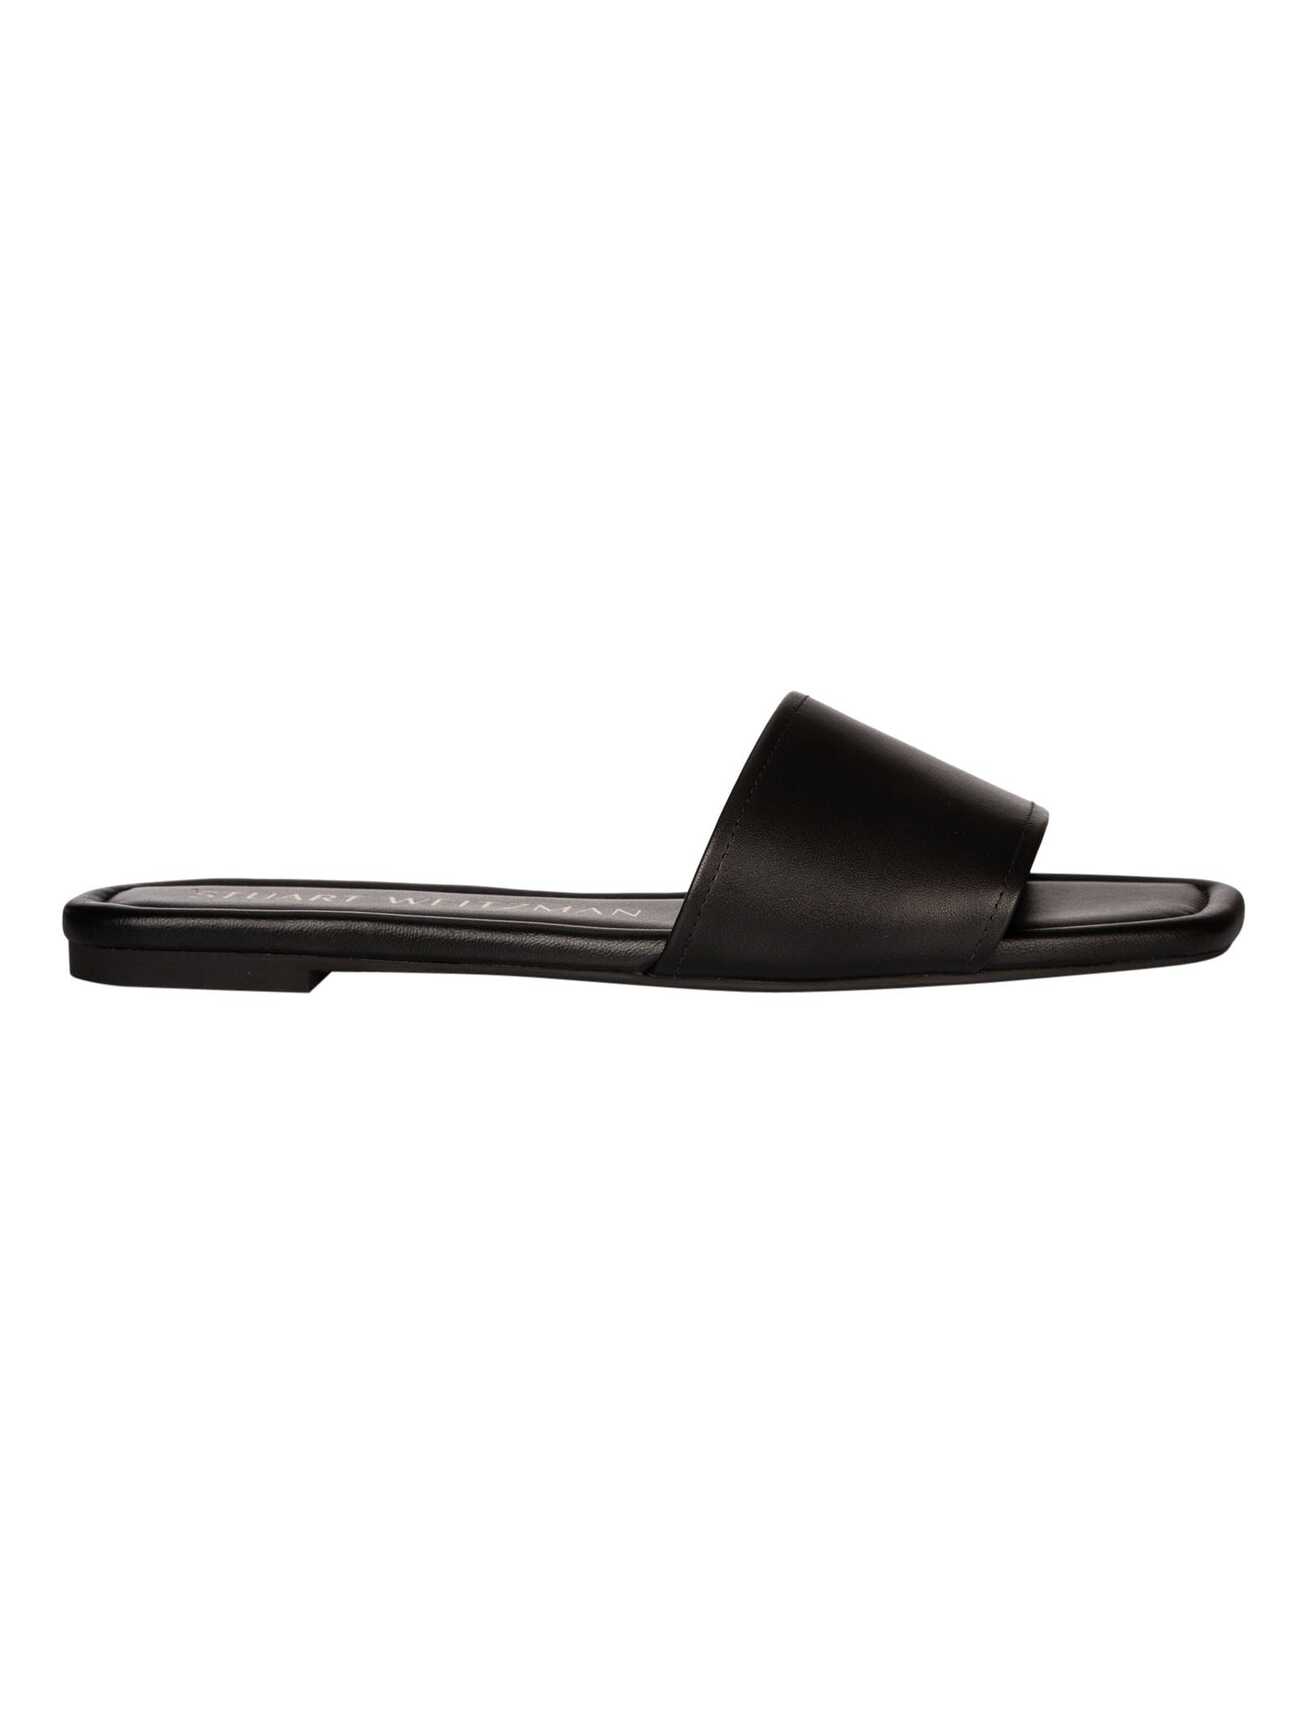 Stuart Weitzman Summer Slider Sandals in black